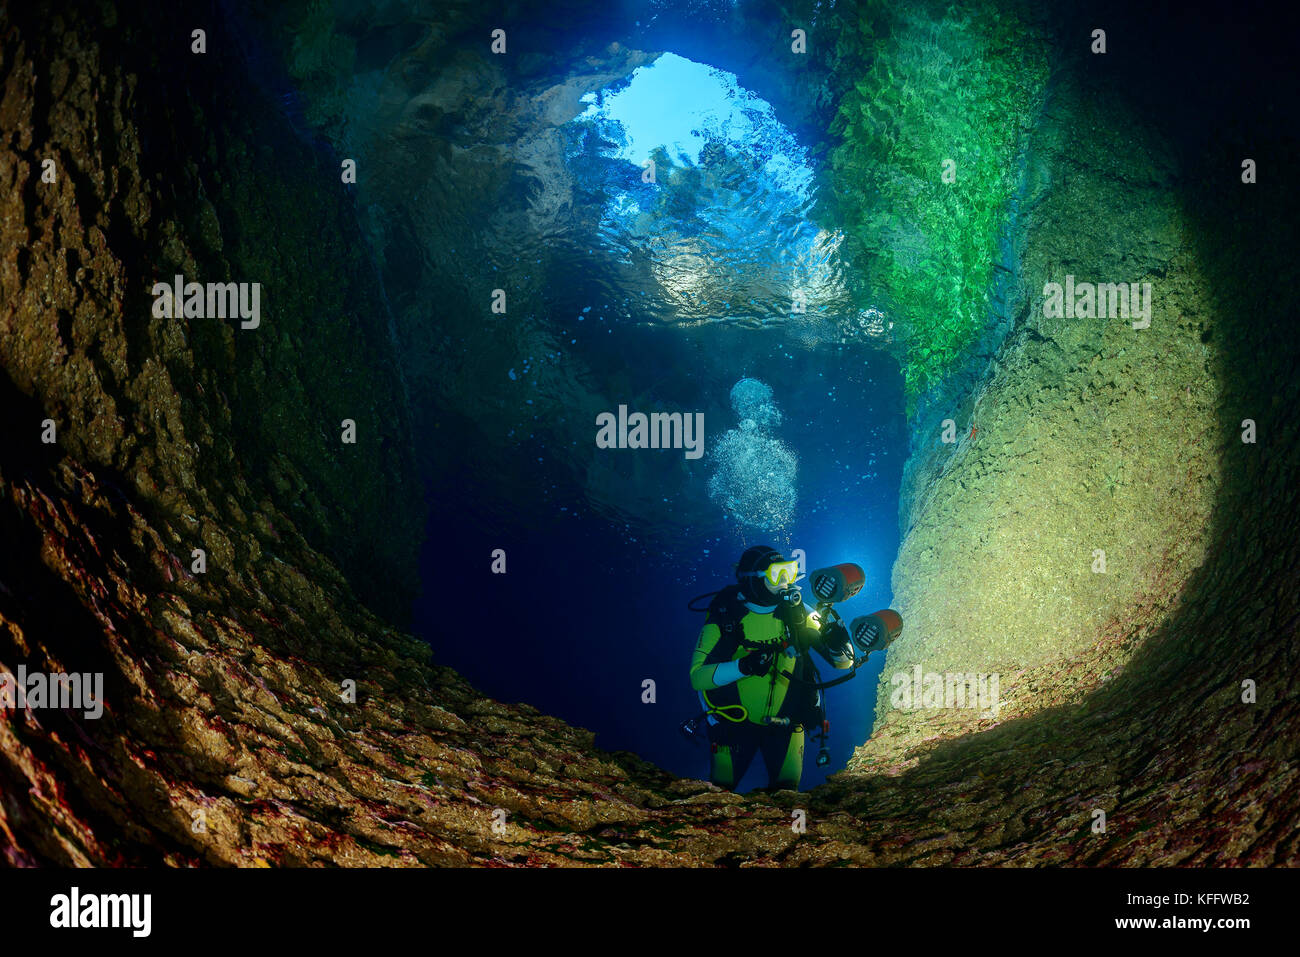 Scuba Diver al l'ingresso della grotta al lago dell'isola susac, mare adriatico, il parco naturale di Lastovo, isola di susac, DALMAZIA, CROAZIA Foto Stock